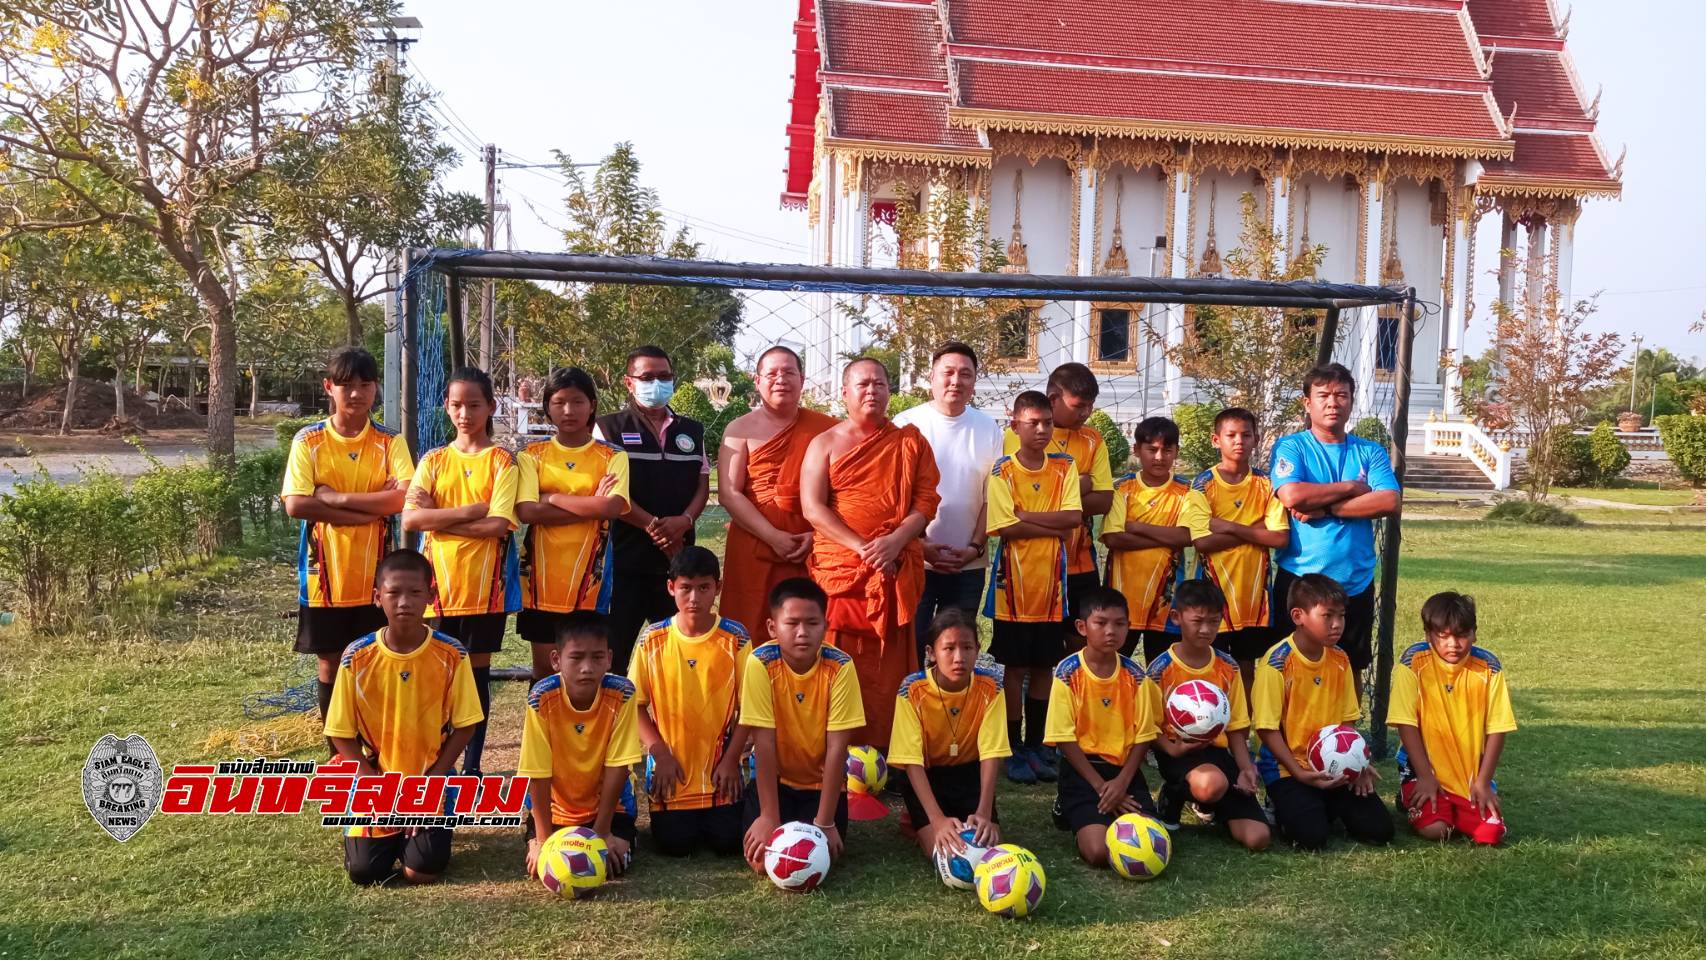 สุพรรณบุรี-พระนำเด็กเข้าวัดฝึกสอนฟุตบอลช่วงปิดเทอมห่างไกลเกมส์ยาเสพติด